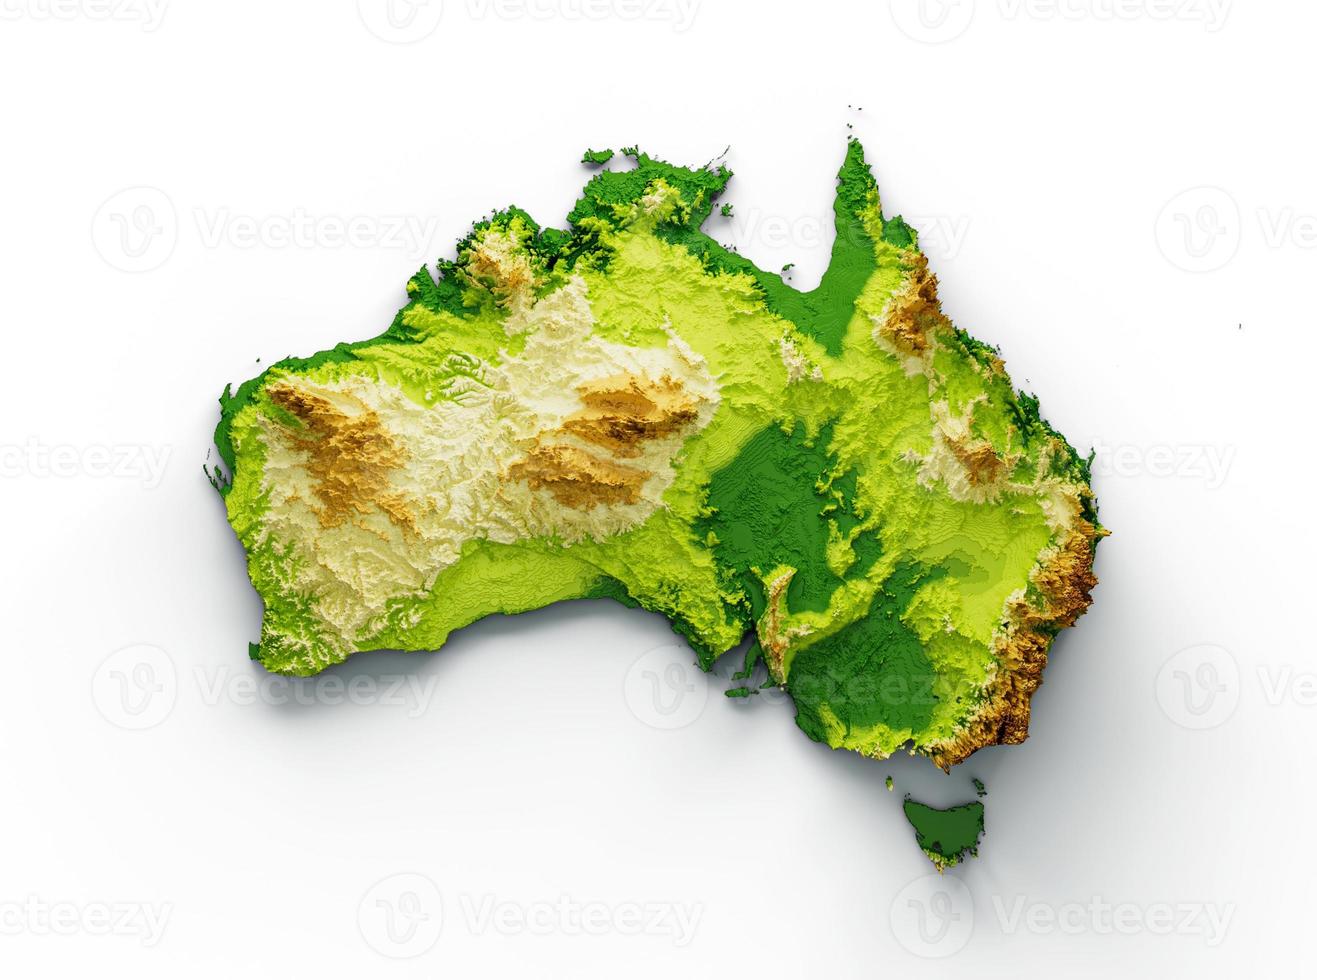 mapa de australia mapa de altura de color de relieve sombreado en el fondo azul del mar ilustración 3d foto